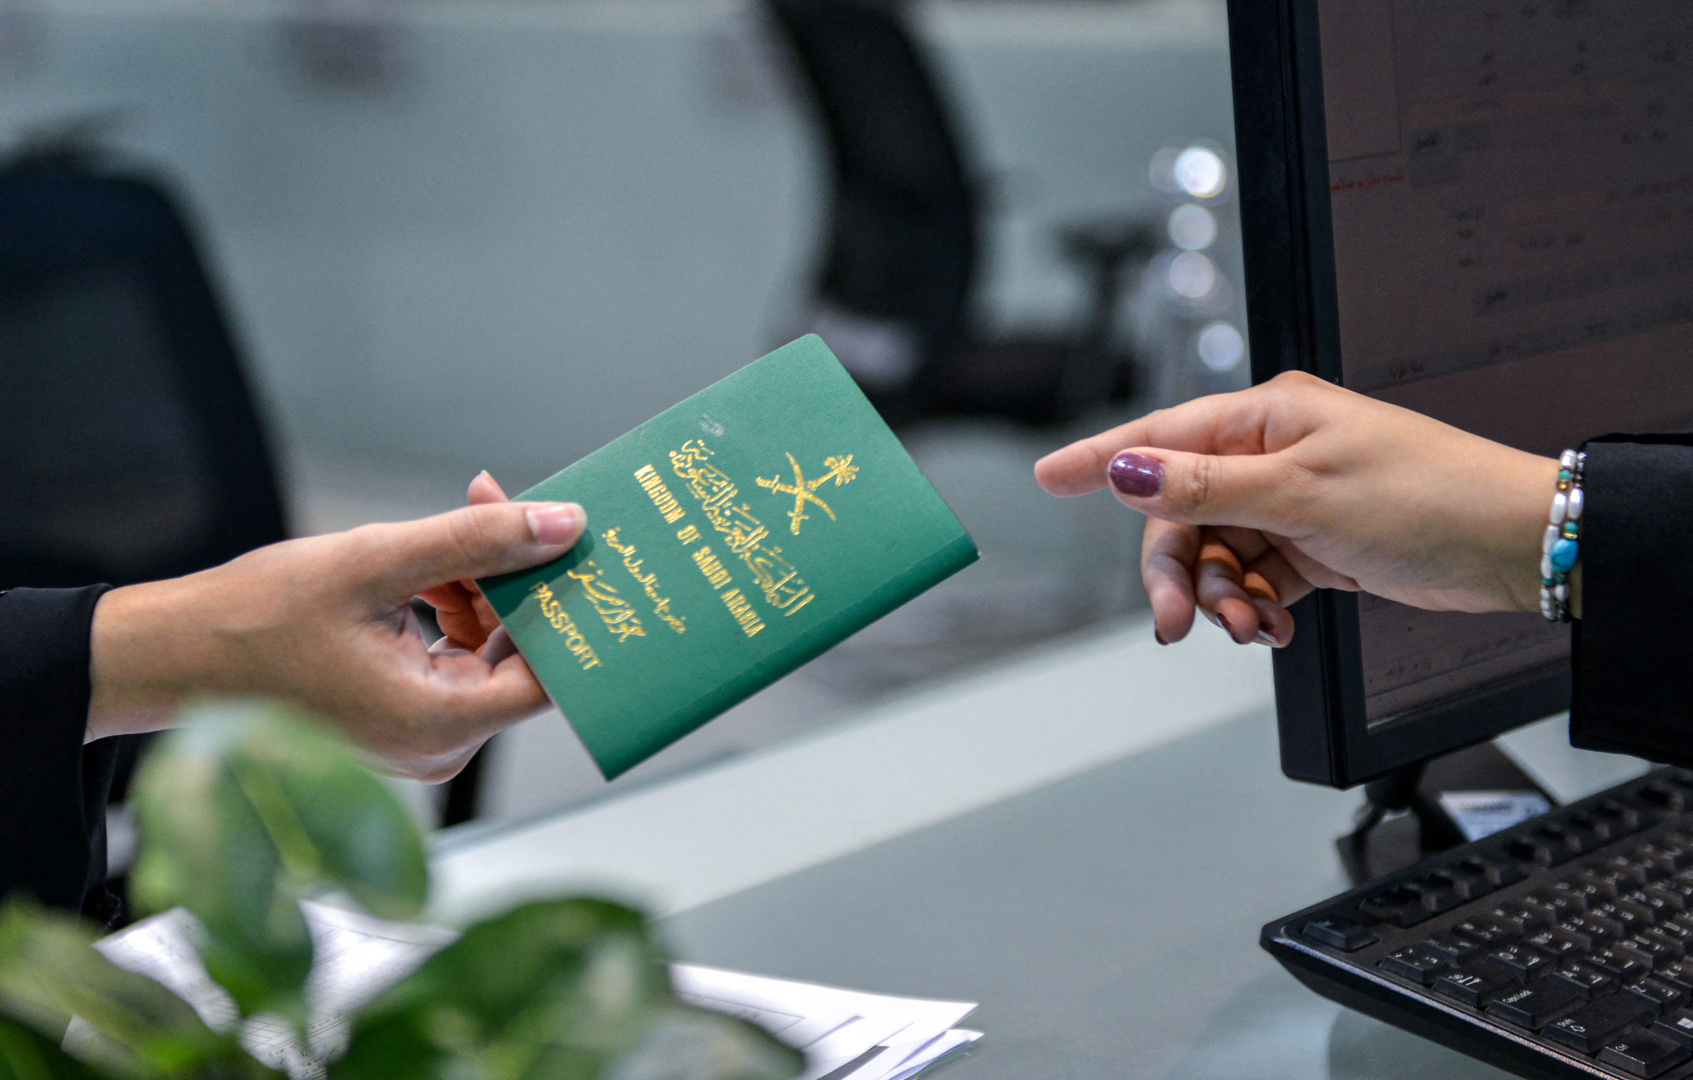 أبرز سمات جواز السفر الإلكتروني السعودي الجديد